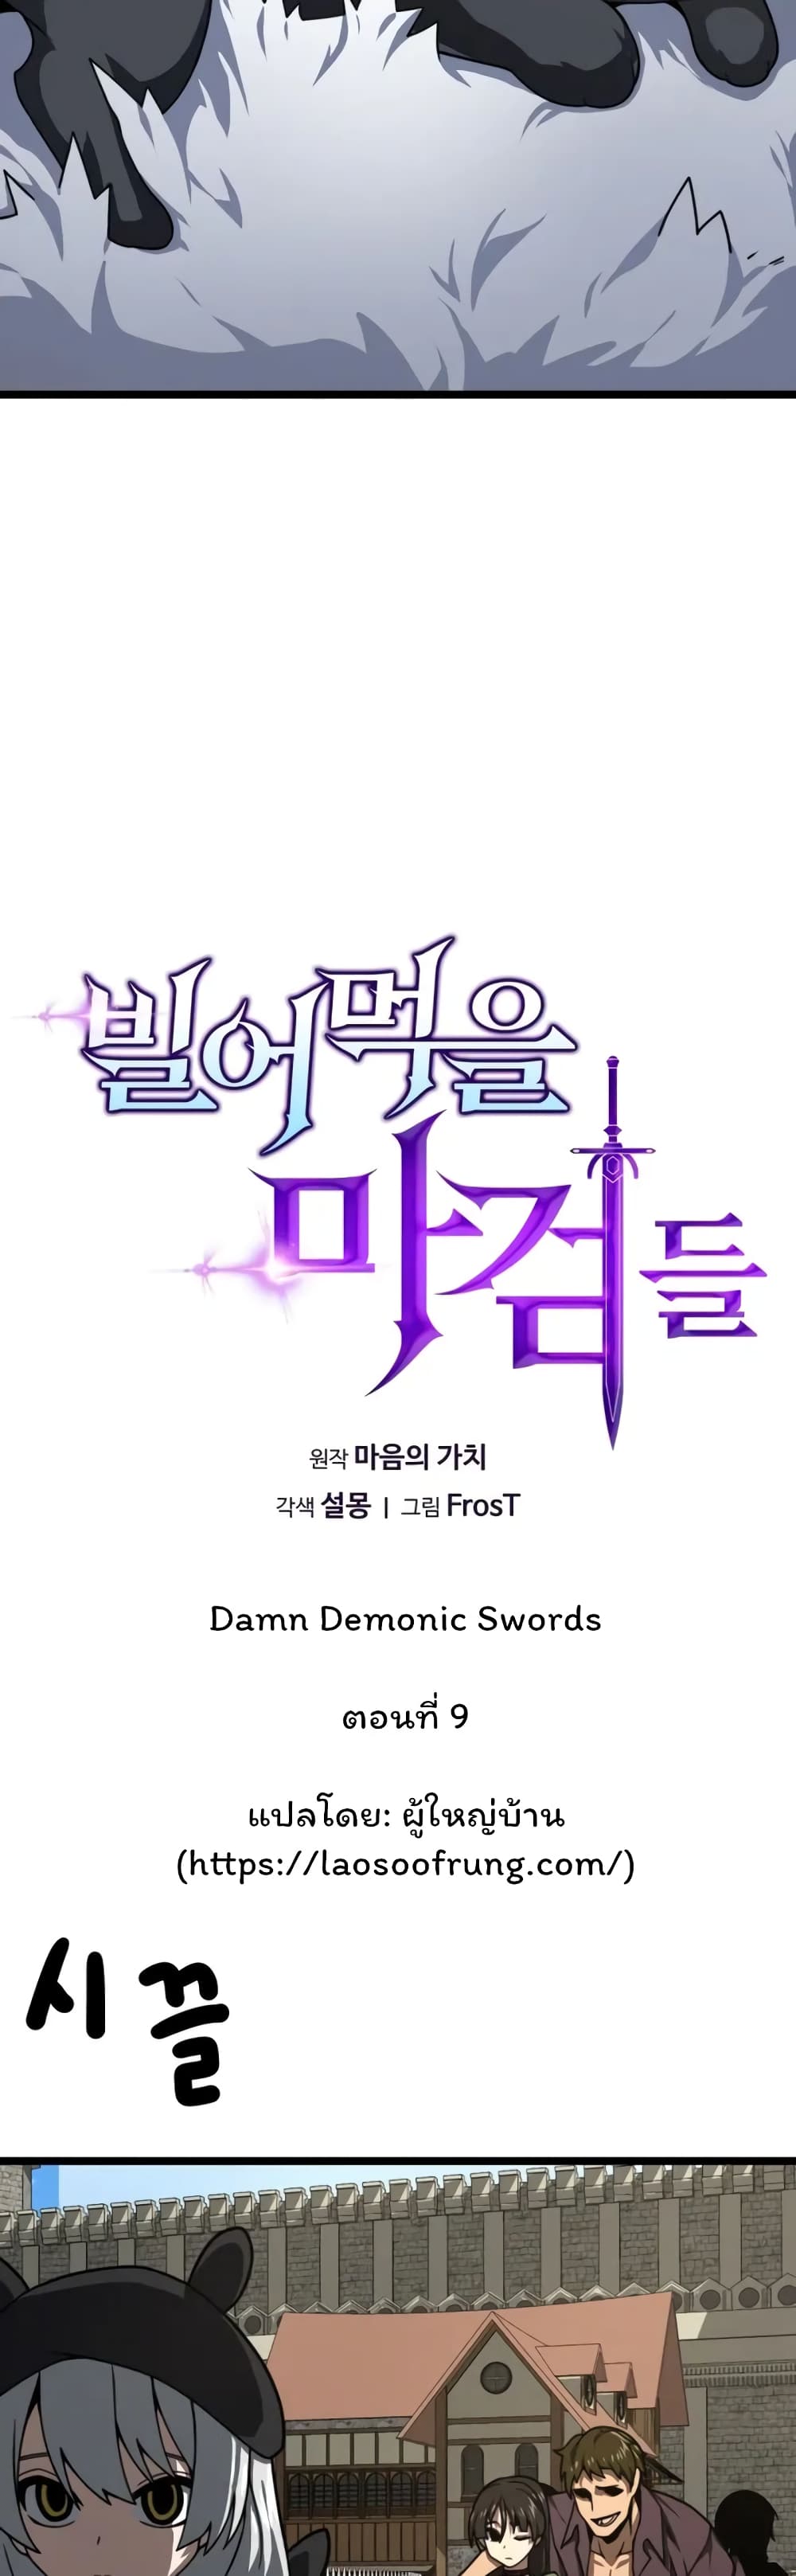 Damn Demonic Swords 9-9